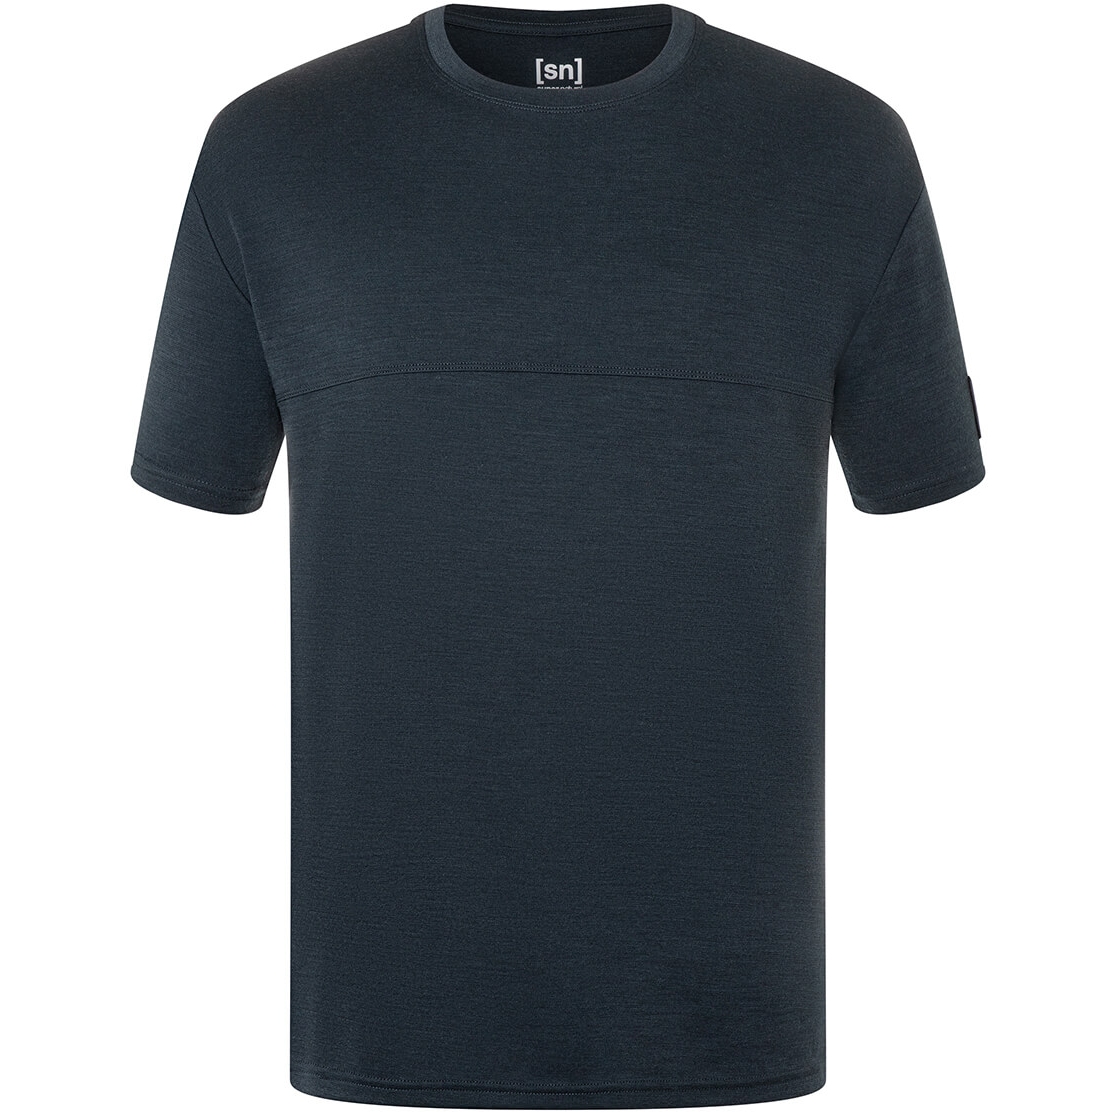 Produktbild von SUPER.NATURAL Oversized Bio T-Shirt Herren - Blueberry